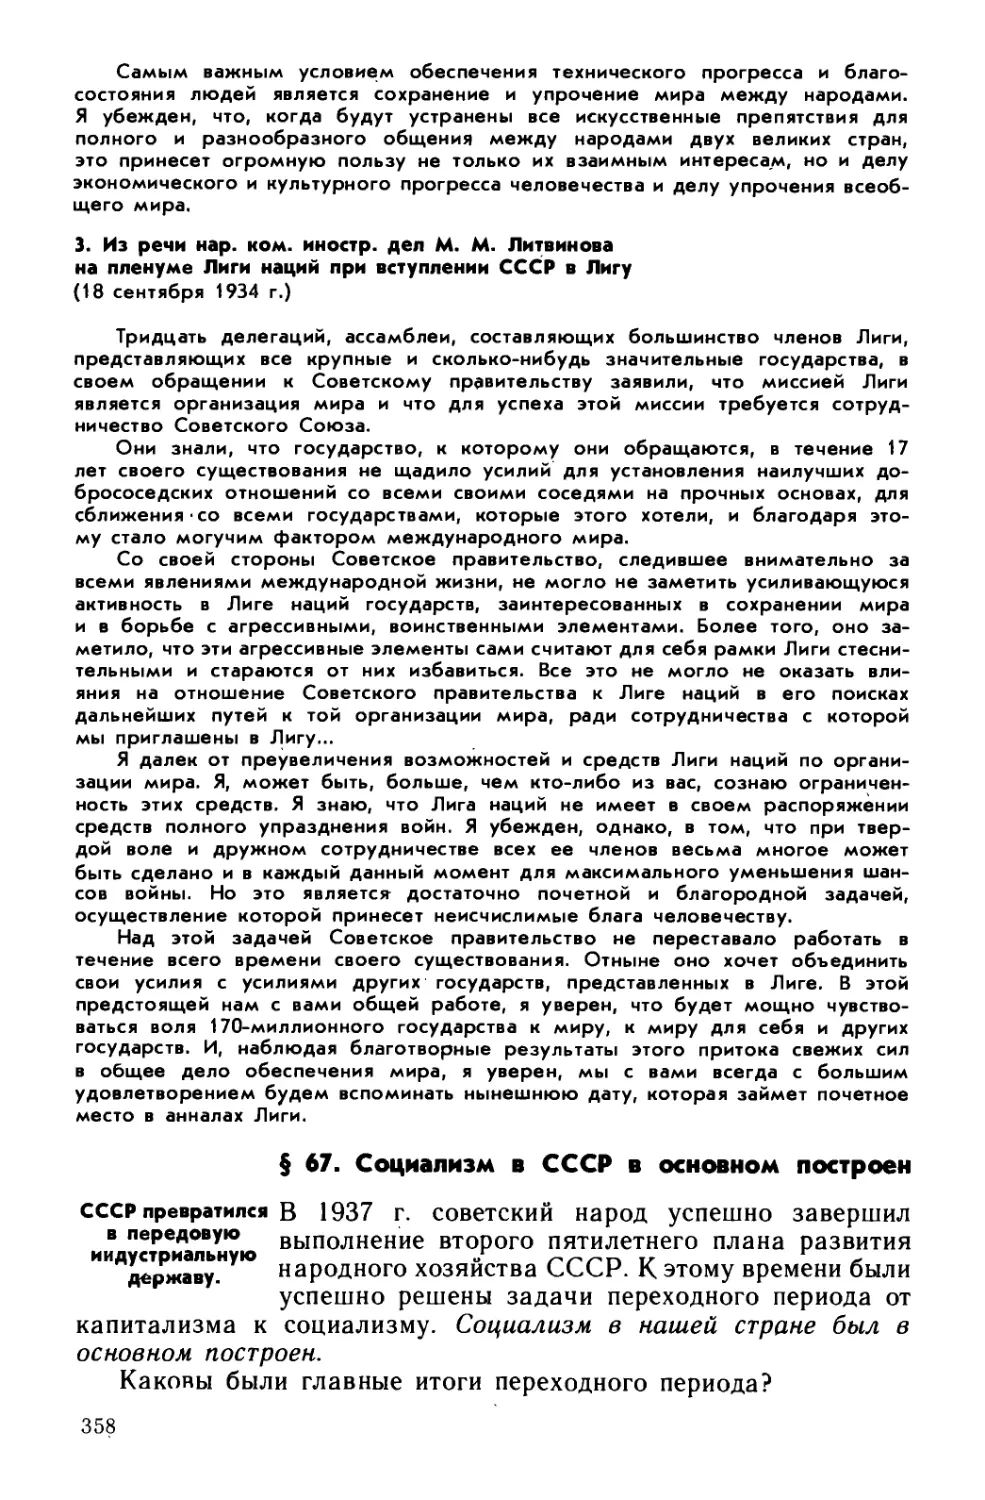 § 67. Социализм в СССР в основном построен